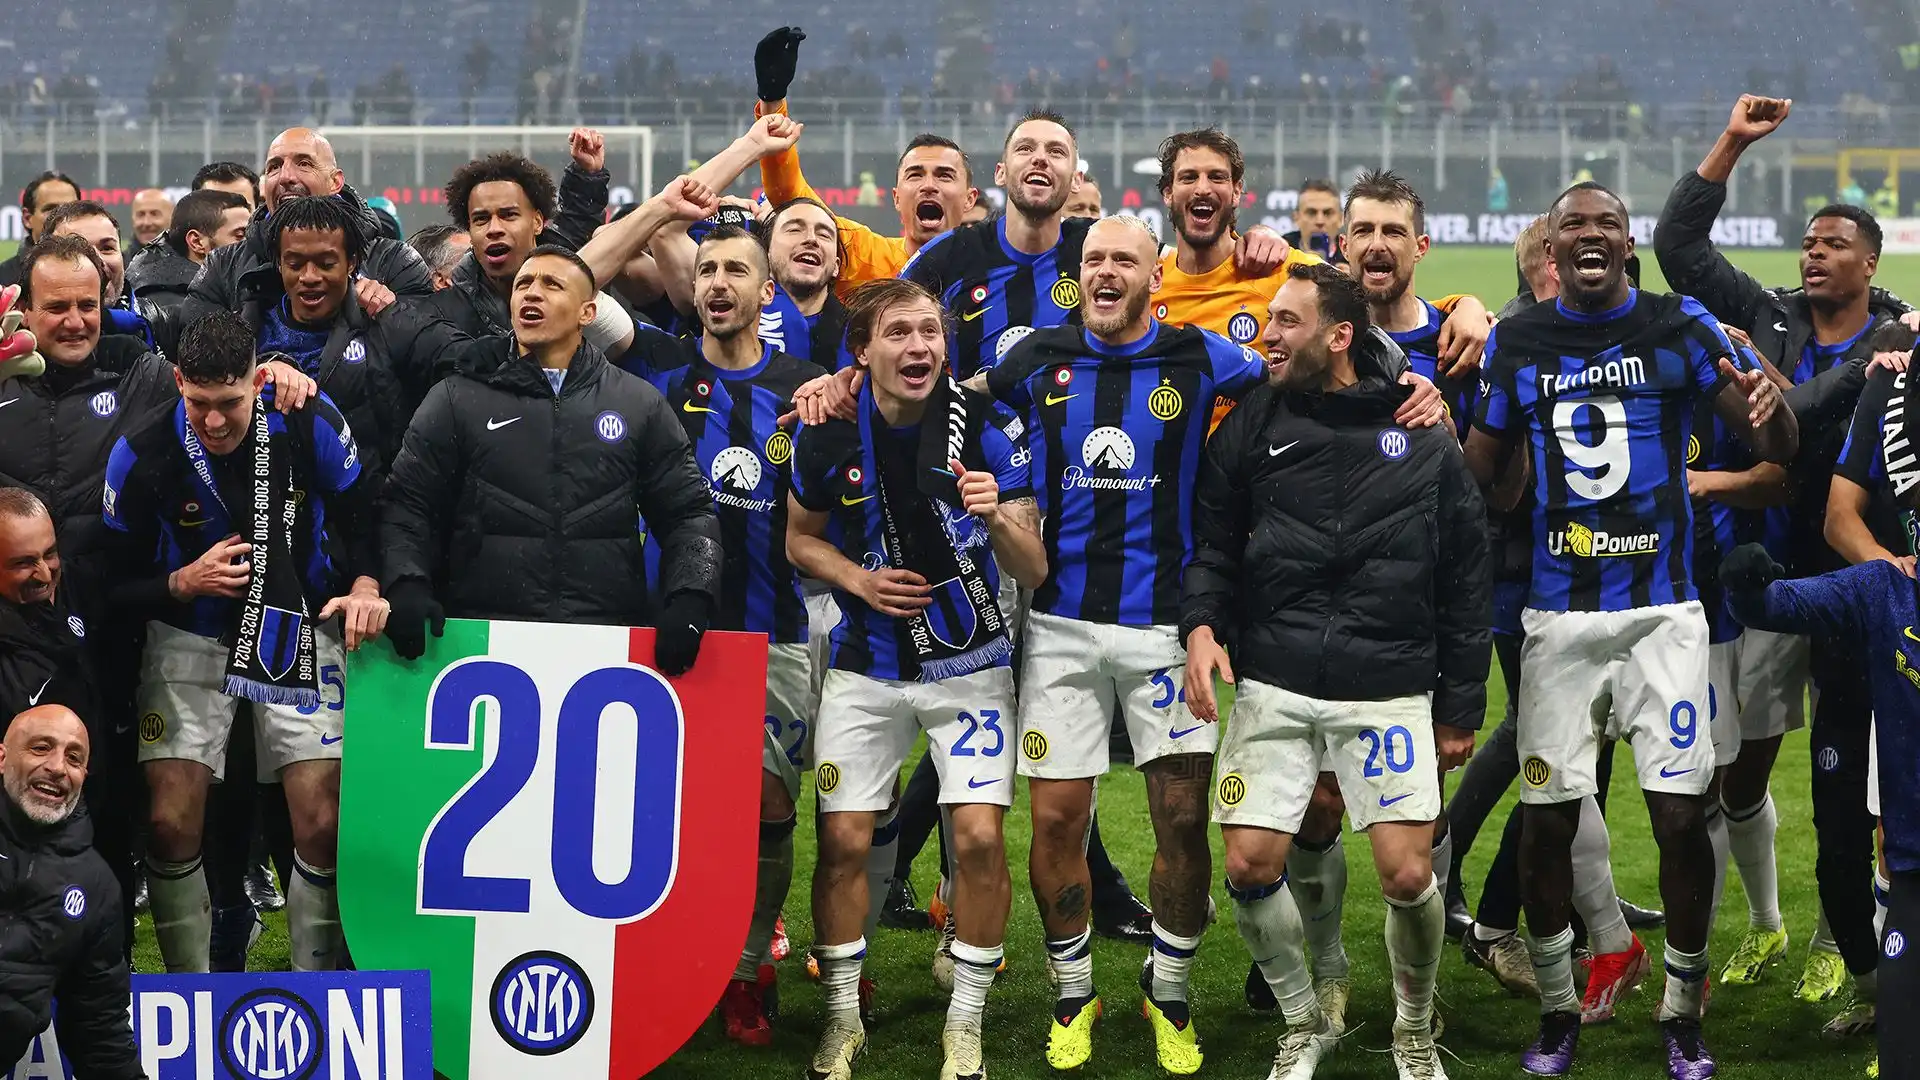 L'Inter ha battuto il Milan per 2-1 grazie alle reti di Acerbi e Thuram